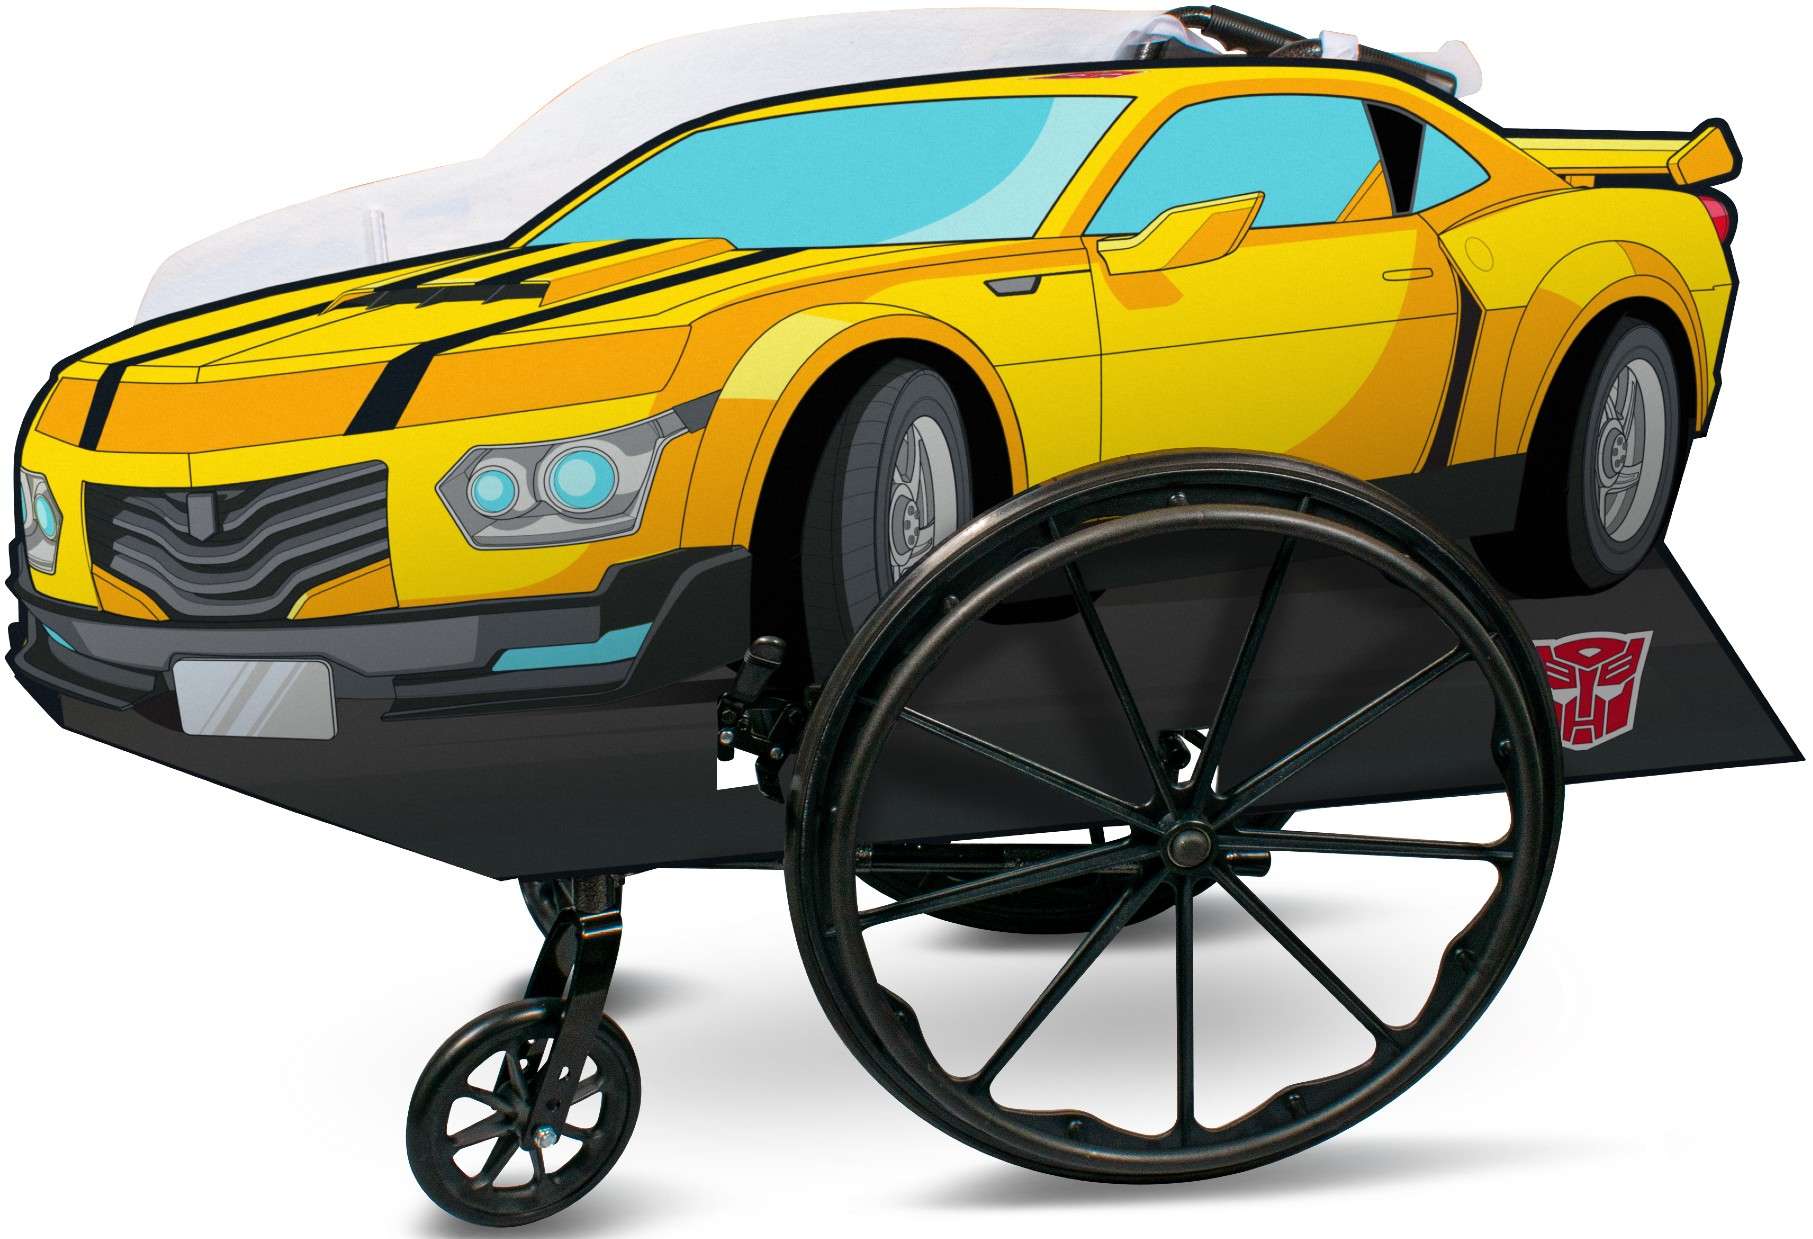 Strj karnawaowy Disney pojazd Transformers Bumblebee na wzek inwalidzki